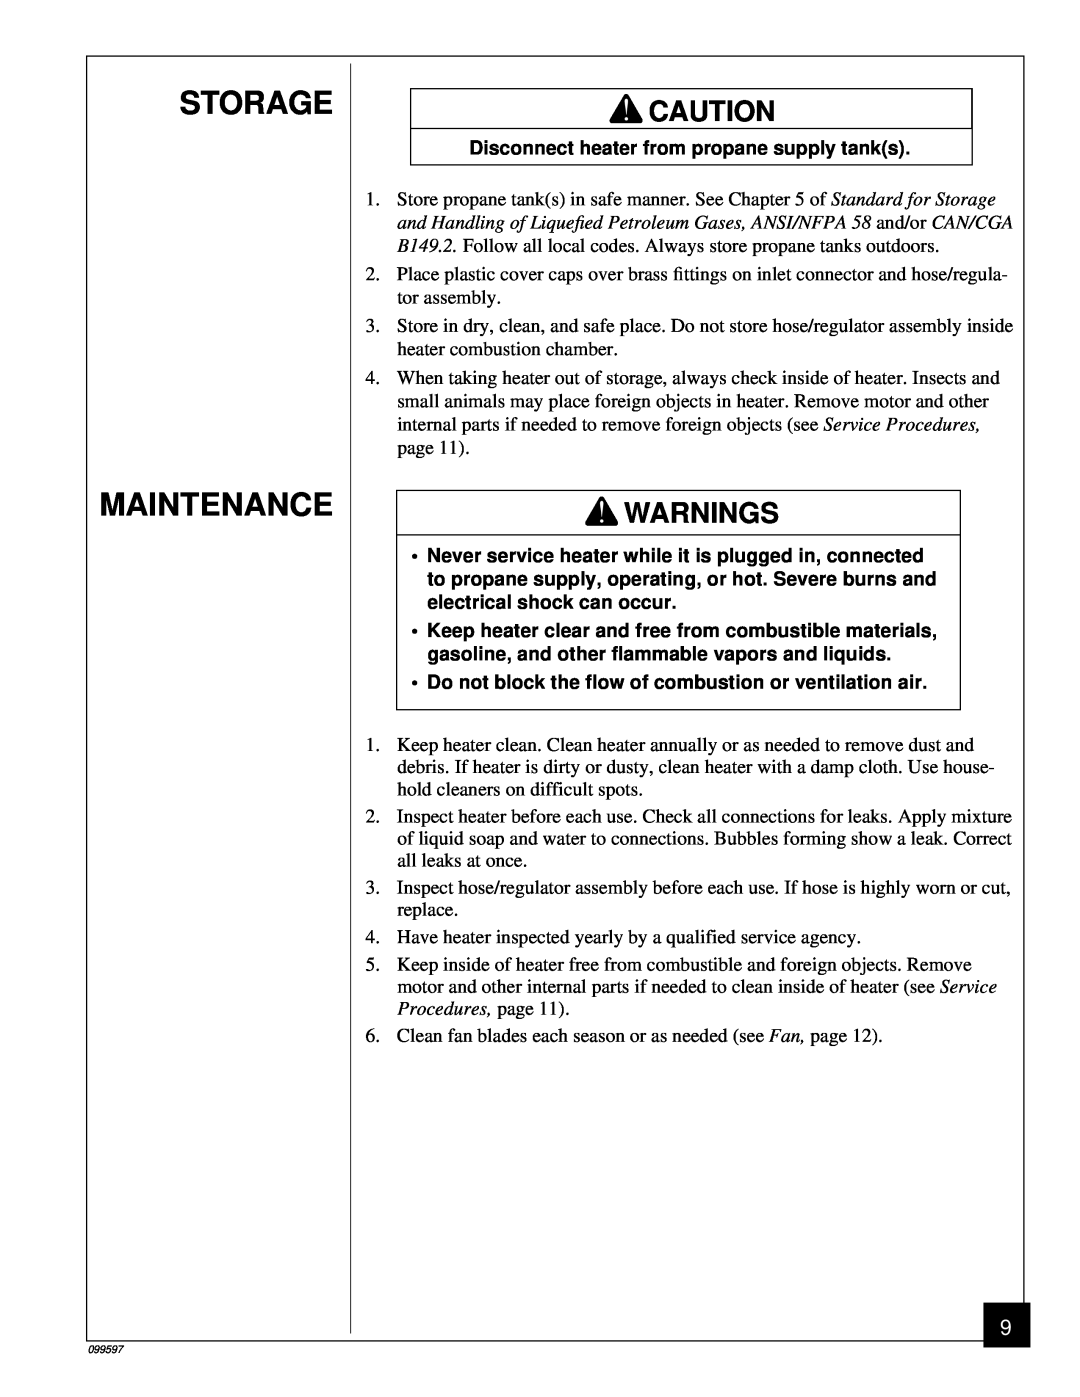 Homelite HP35 owner manual Storage Maintenance, Warnings 